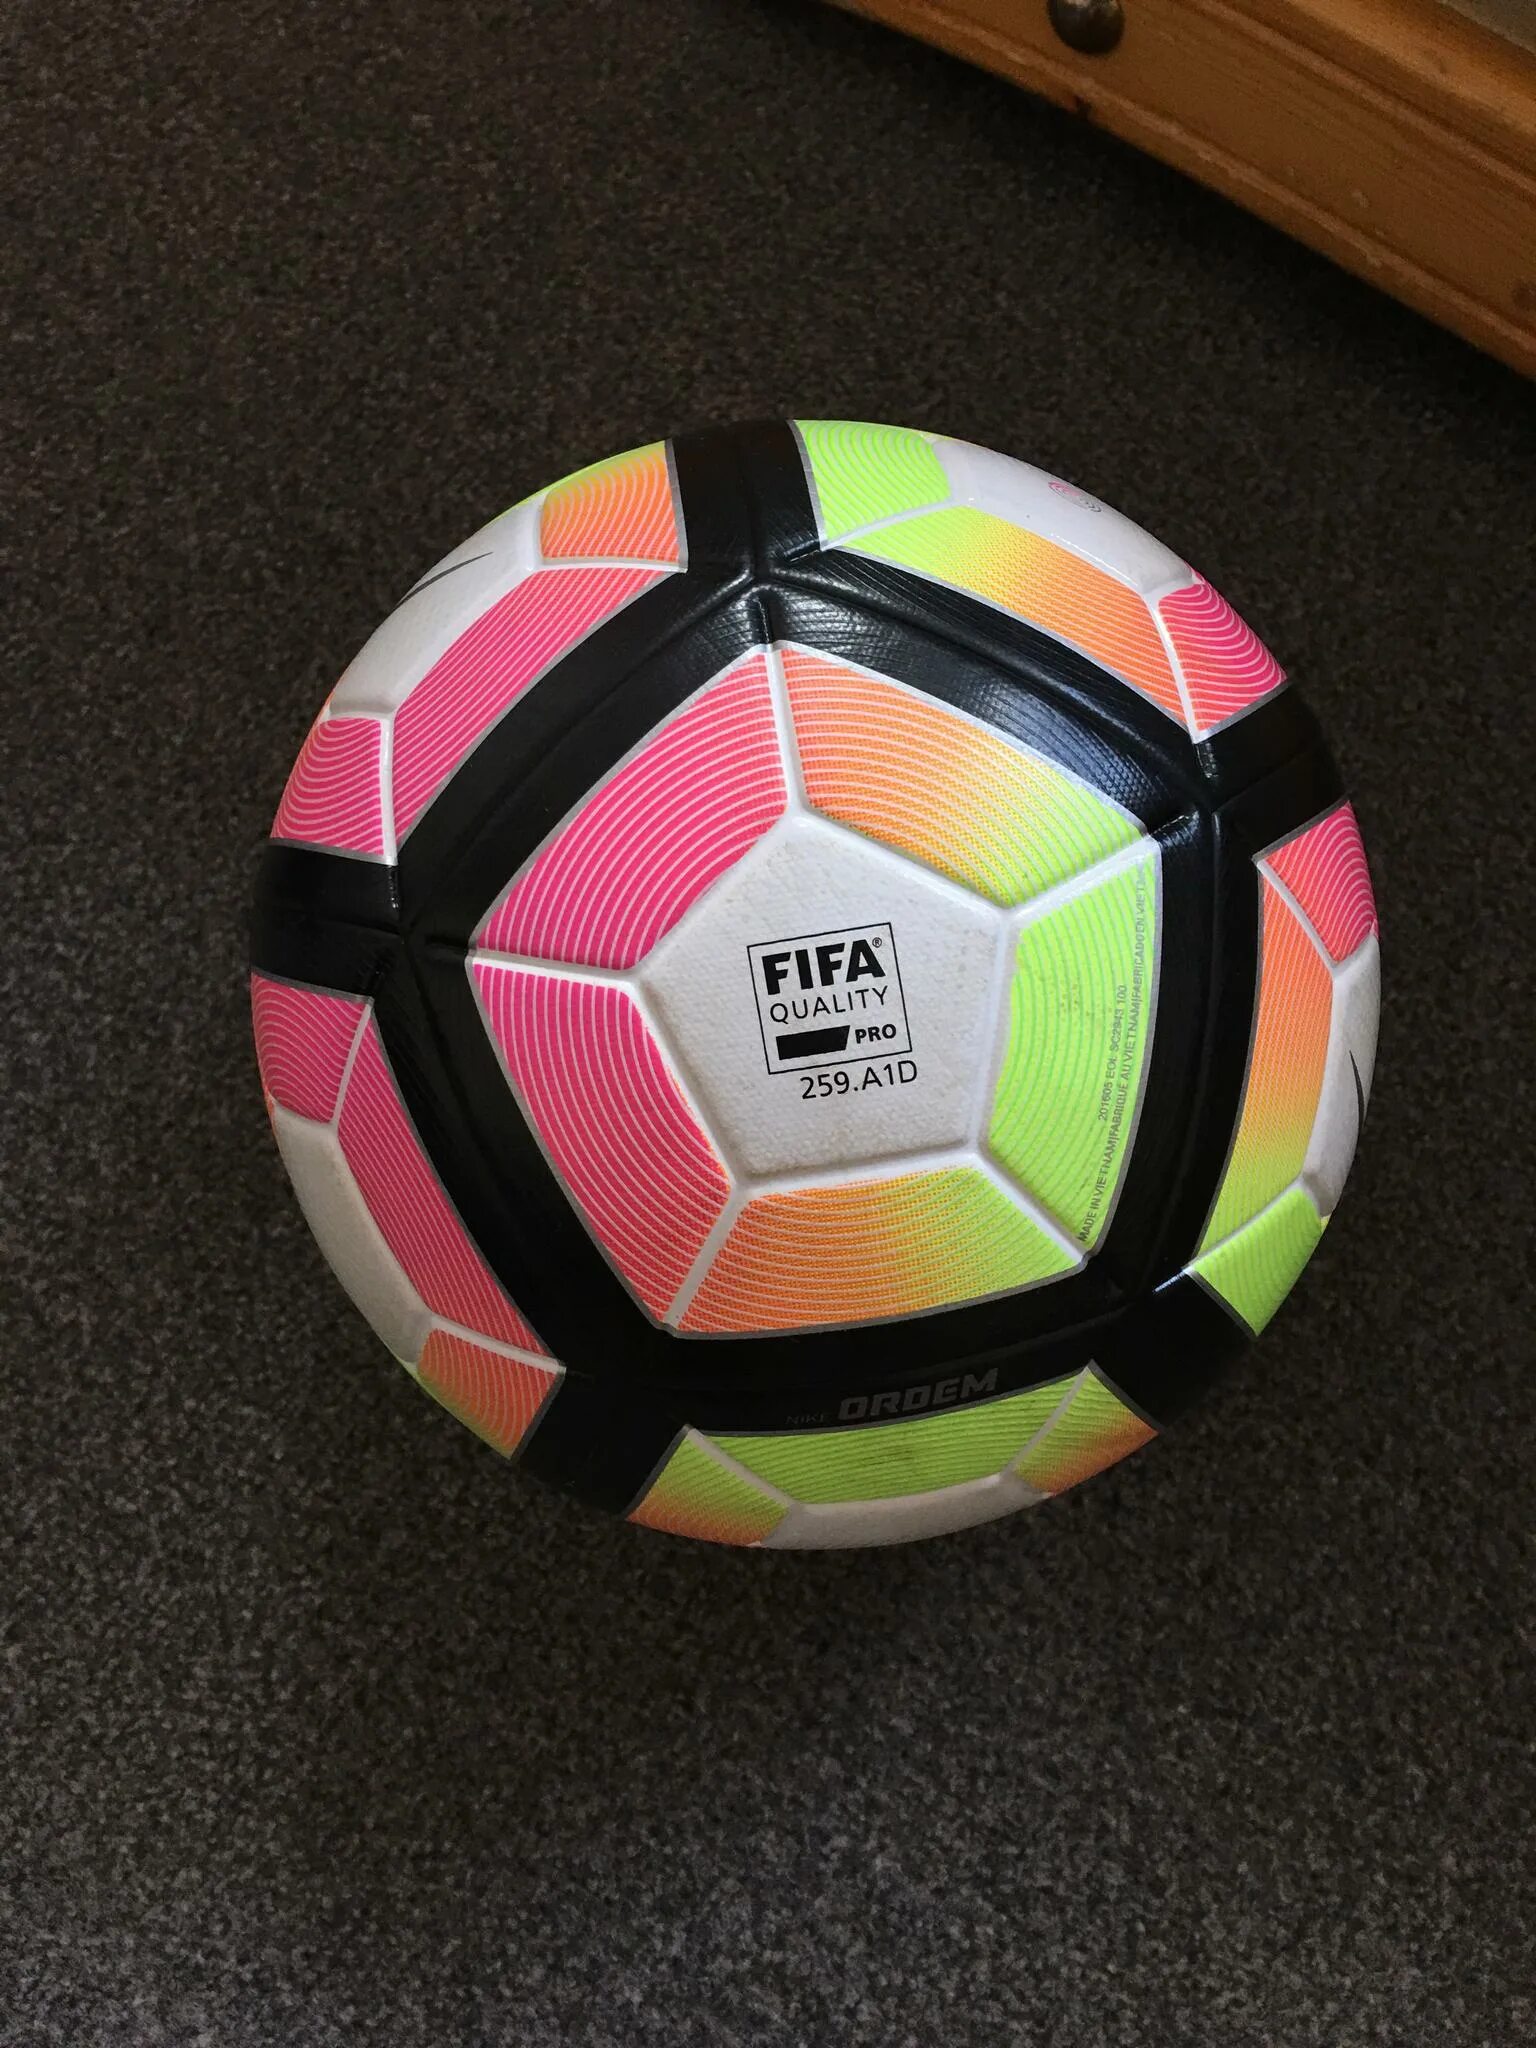 Мяч fifa quality pro. FIFA quality Pro 202. A1l. Мяч Nike FIFA quality 2006-2007. Футбольный мяч найк FIFA quality Pro 2017. Мячи в FIFA 23 найк.